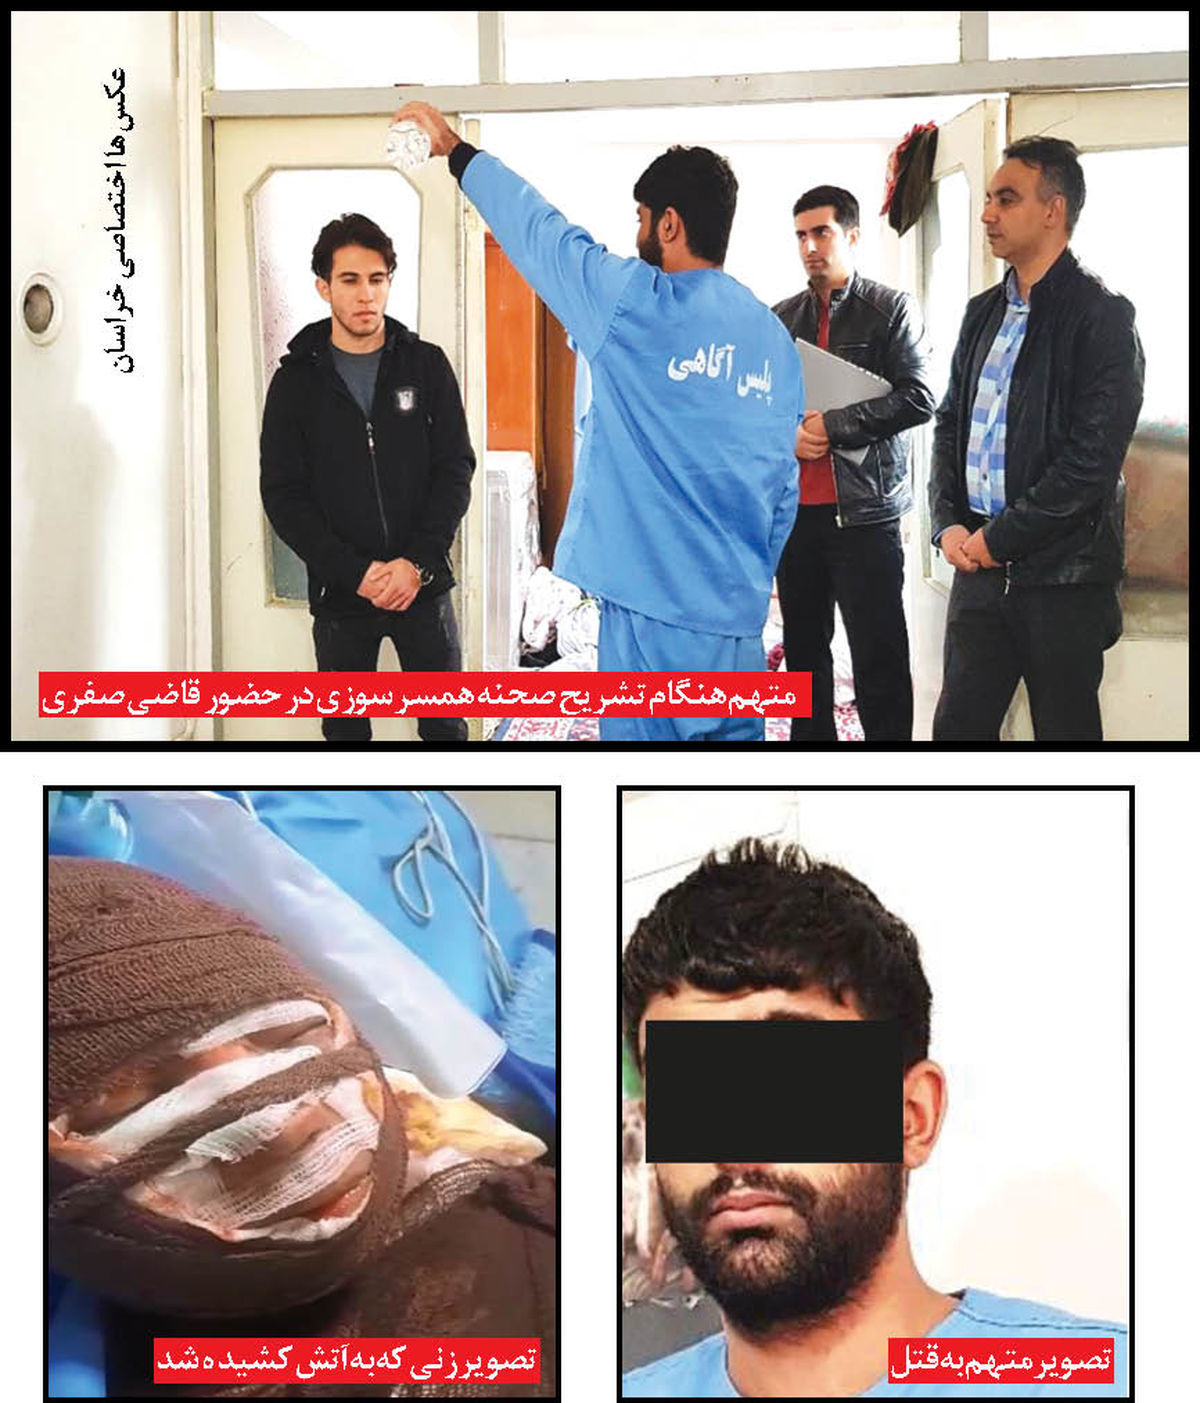 ماجرای همسرسوزی در مشهد چه بود | چرا قتل به گردن زن دیگری افتاد ؟